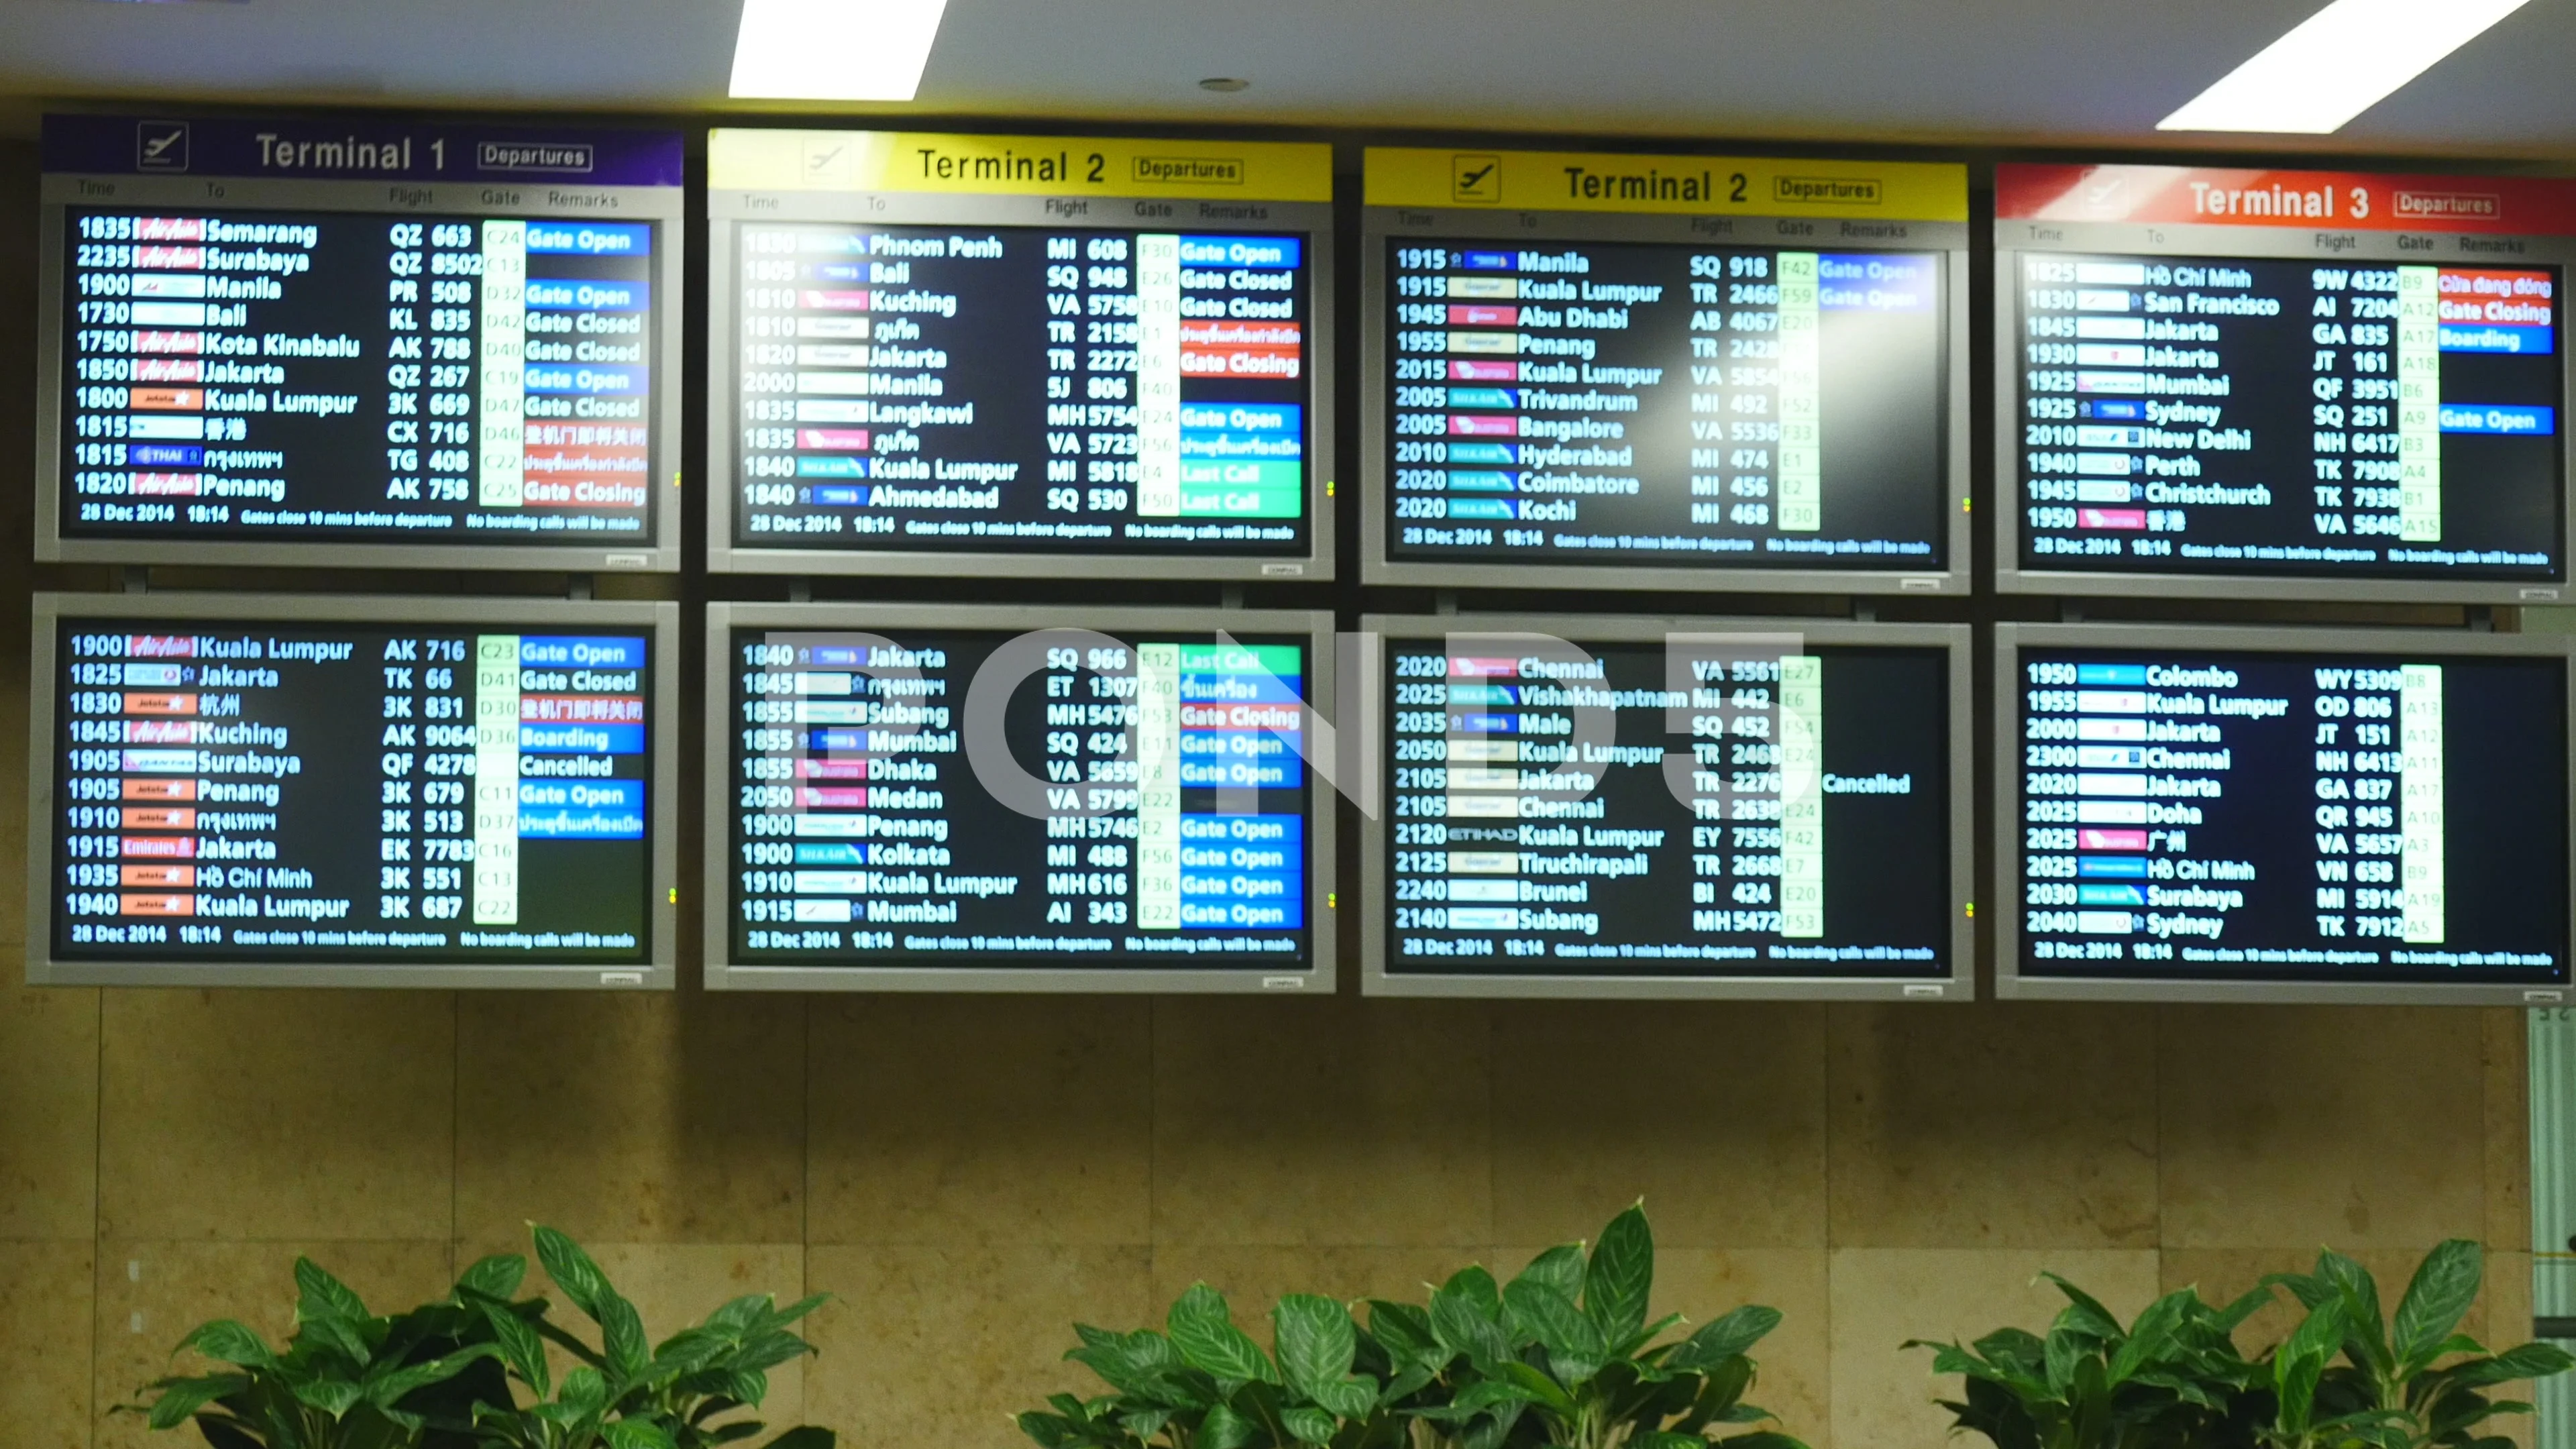 Аэропорт куала лумпур вылет. Аэропорт Куала Лумпур схема терминалов. Аэропорт Куала Лумпур терминал 1. Аэропорт Куала Лумпур терминалы. Схема аэропорта Куала Лумпур терминал м.